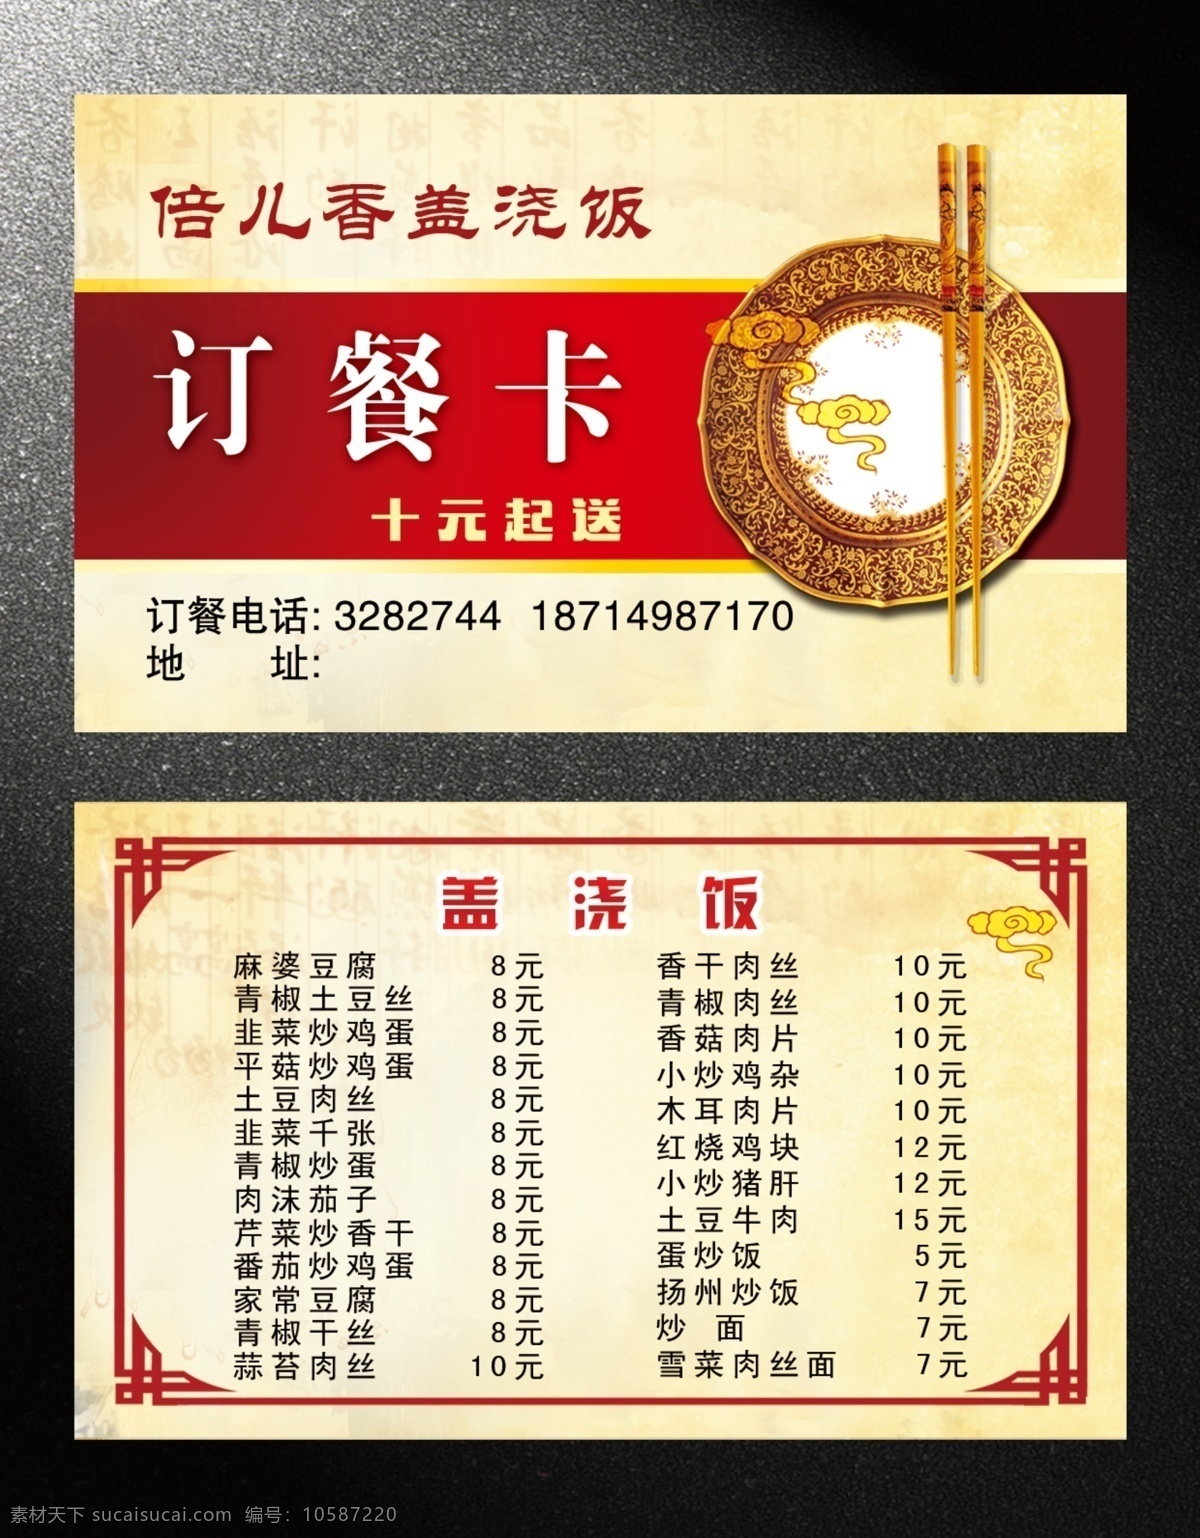 订餐卡 饭店订餐卡 酒店订餐卡 土菜馆订餐卡 饭店名片 碗筷 金色底 中国风边框 红色边框 名片卡片